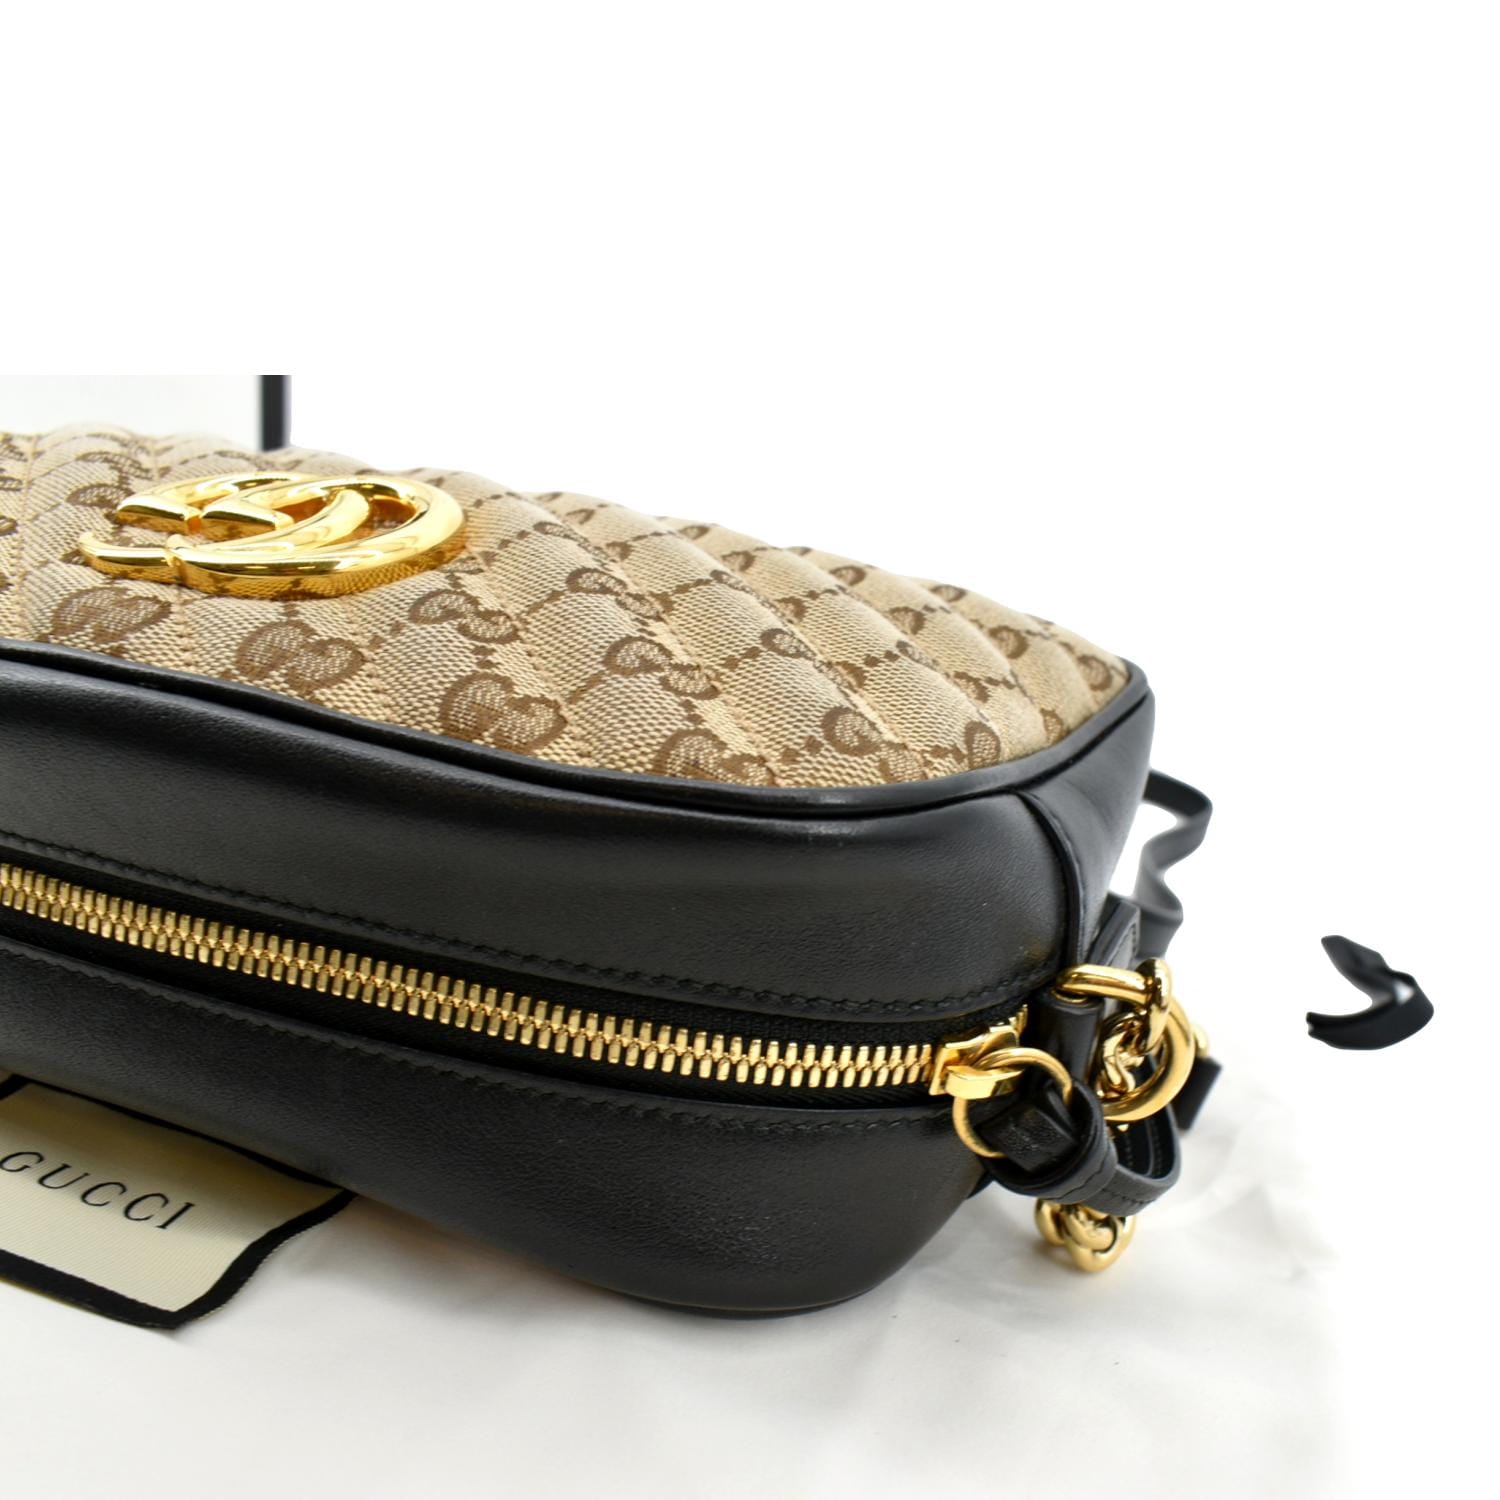 Gucci Small Marmont Matelasse Camera Bag - Neutrals Crossbody Bags, Handbags  - GUC1352742